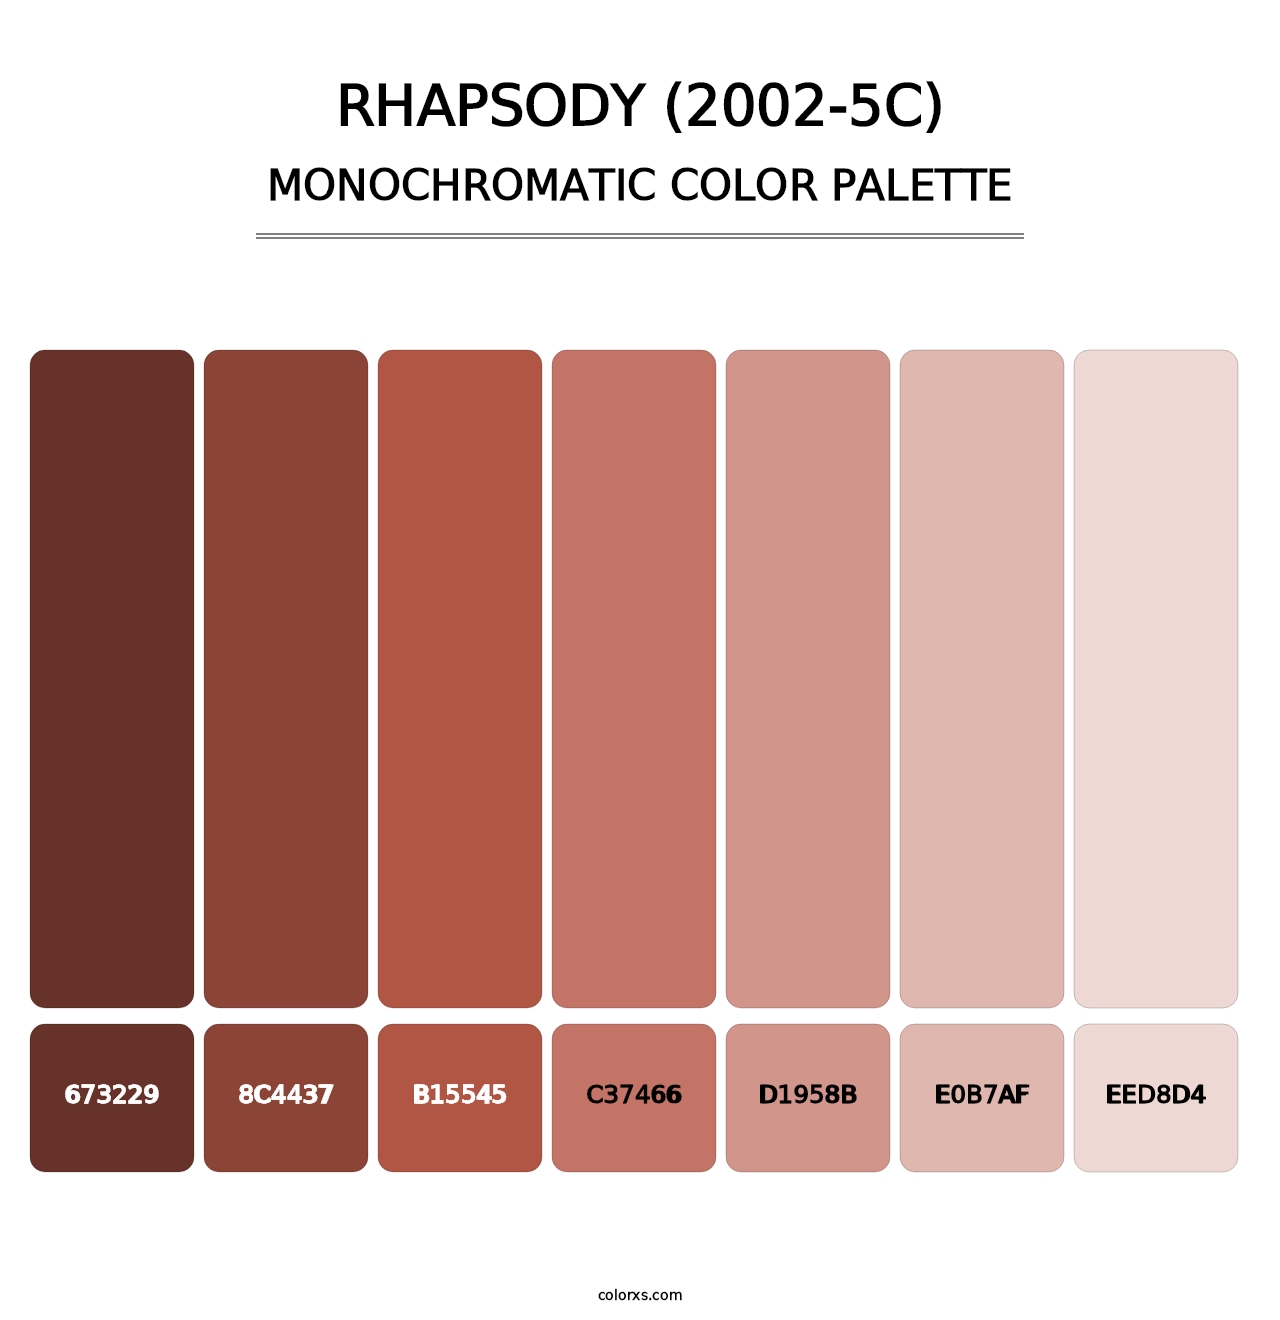 Rhapsody (2002-5C) - Monochromatic Color Palette